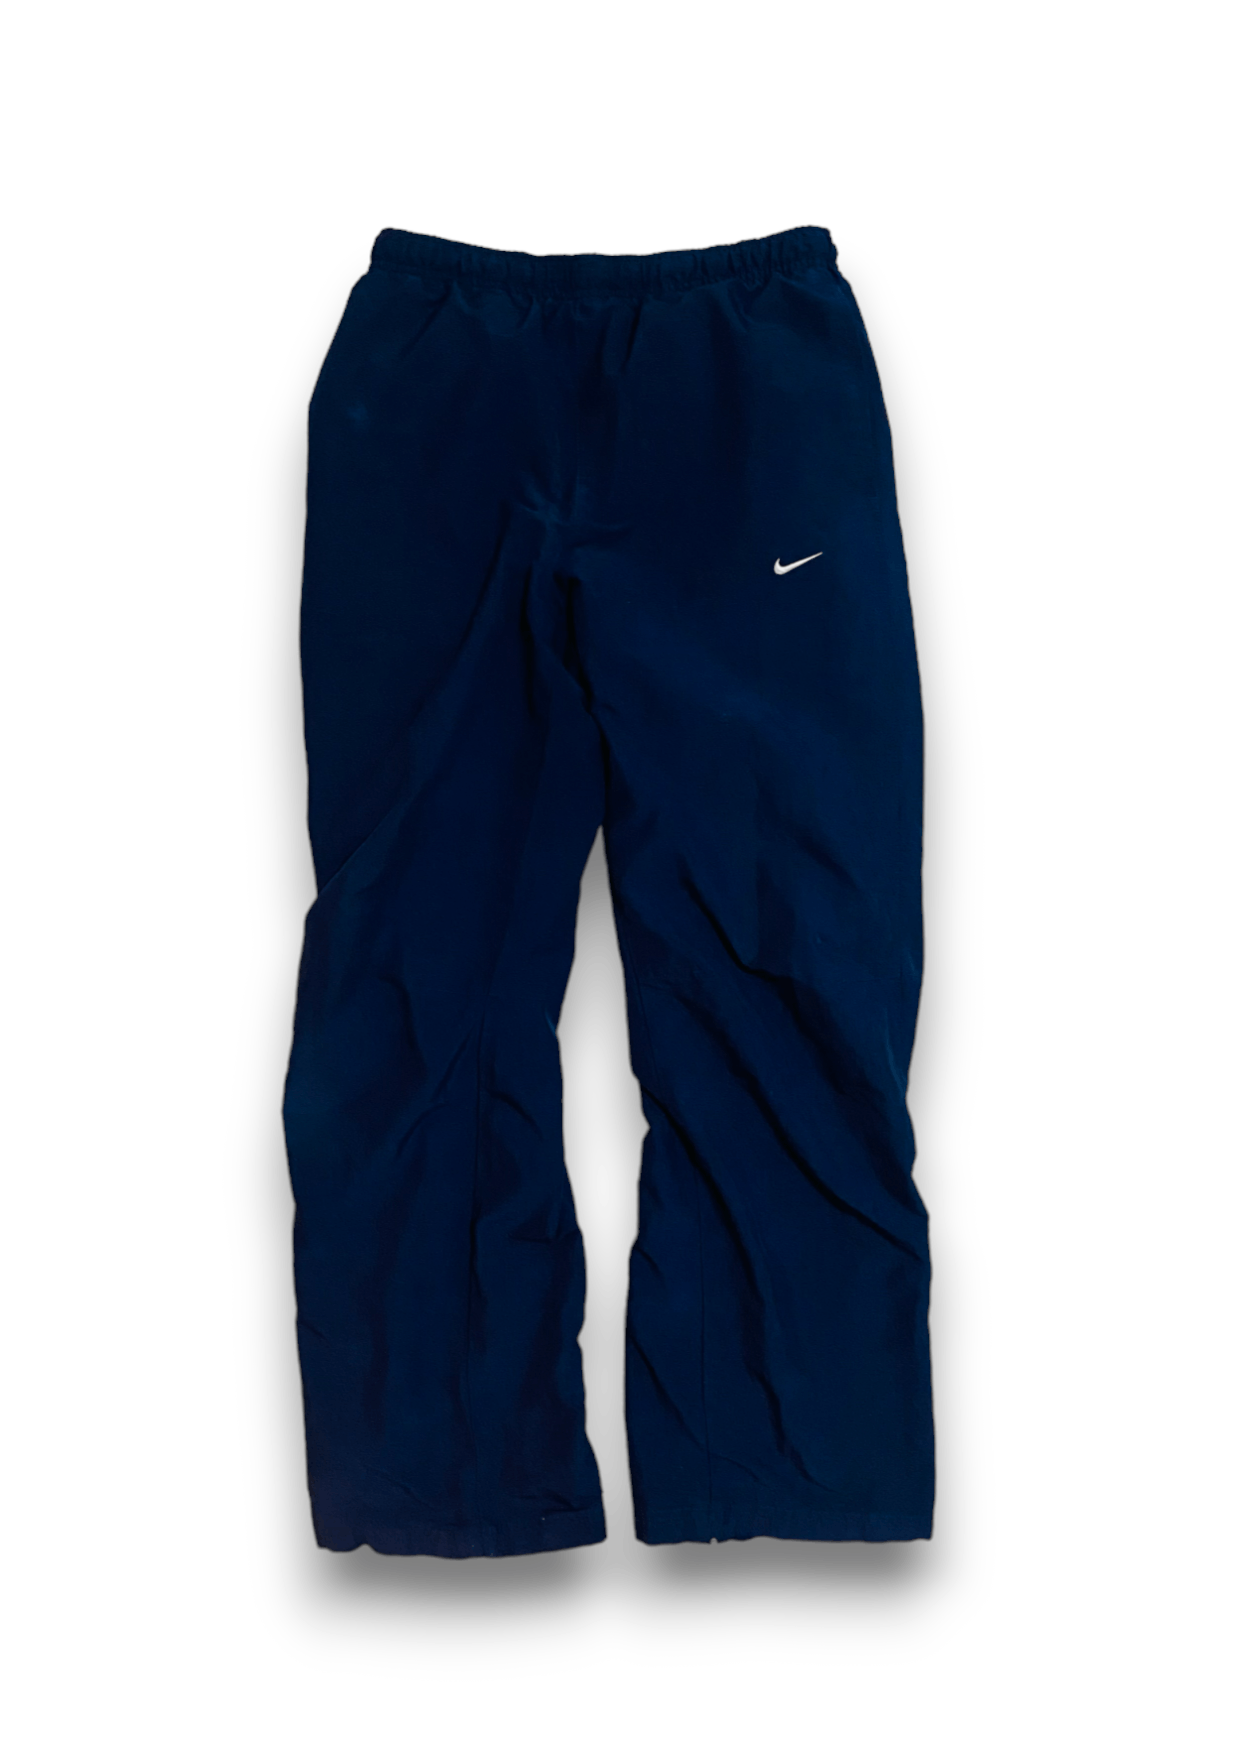 Nike Track Pants Y2K Navy Blue Streetwear Vintage Men’s M - 3